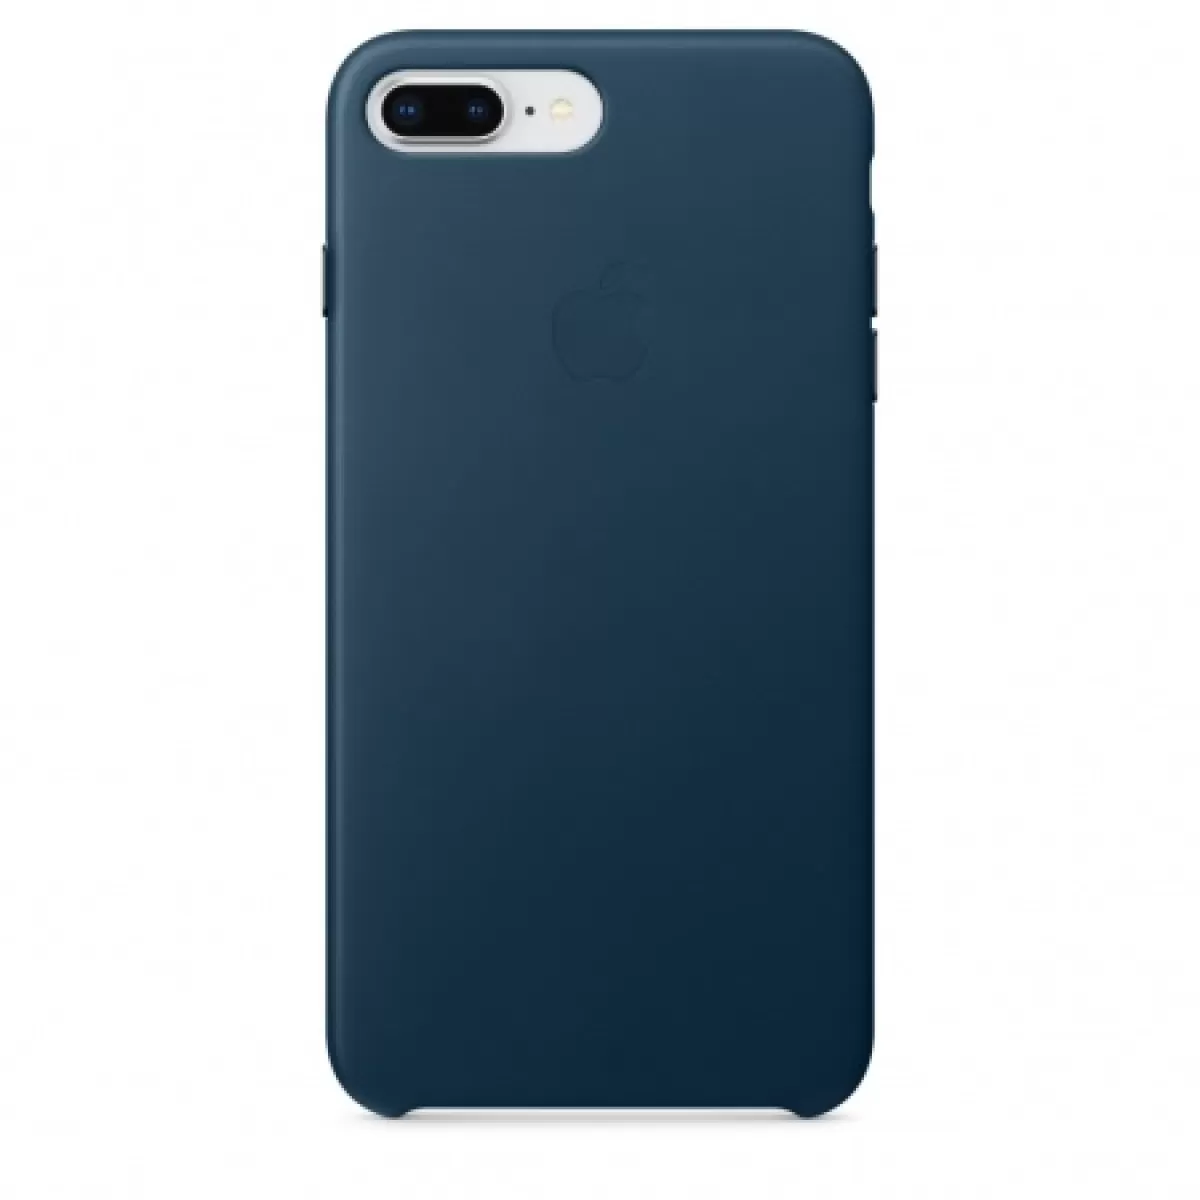 Apple iPhone 8 Plus/7 Plus Leather Case Cosmos Blue